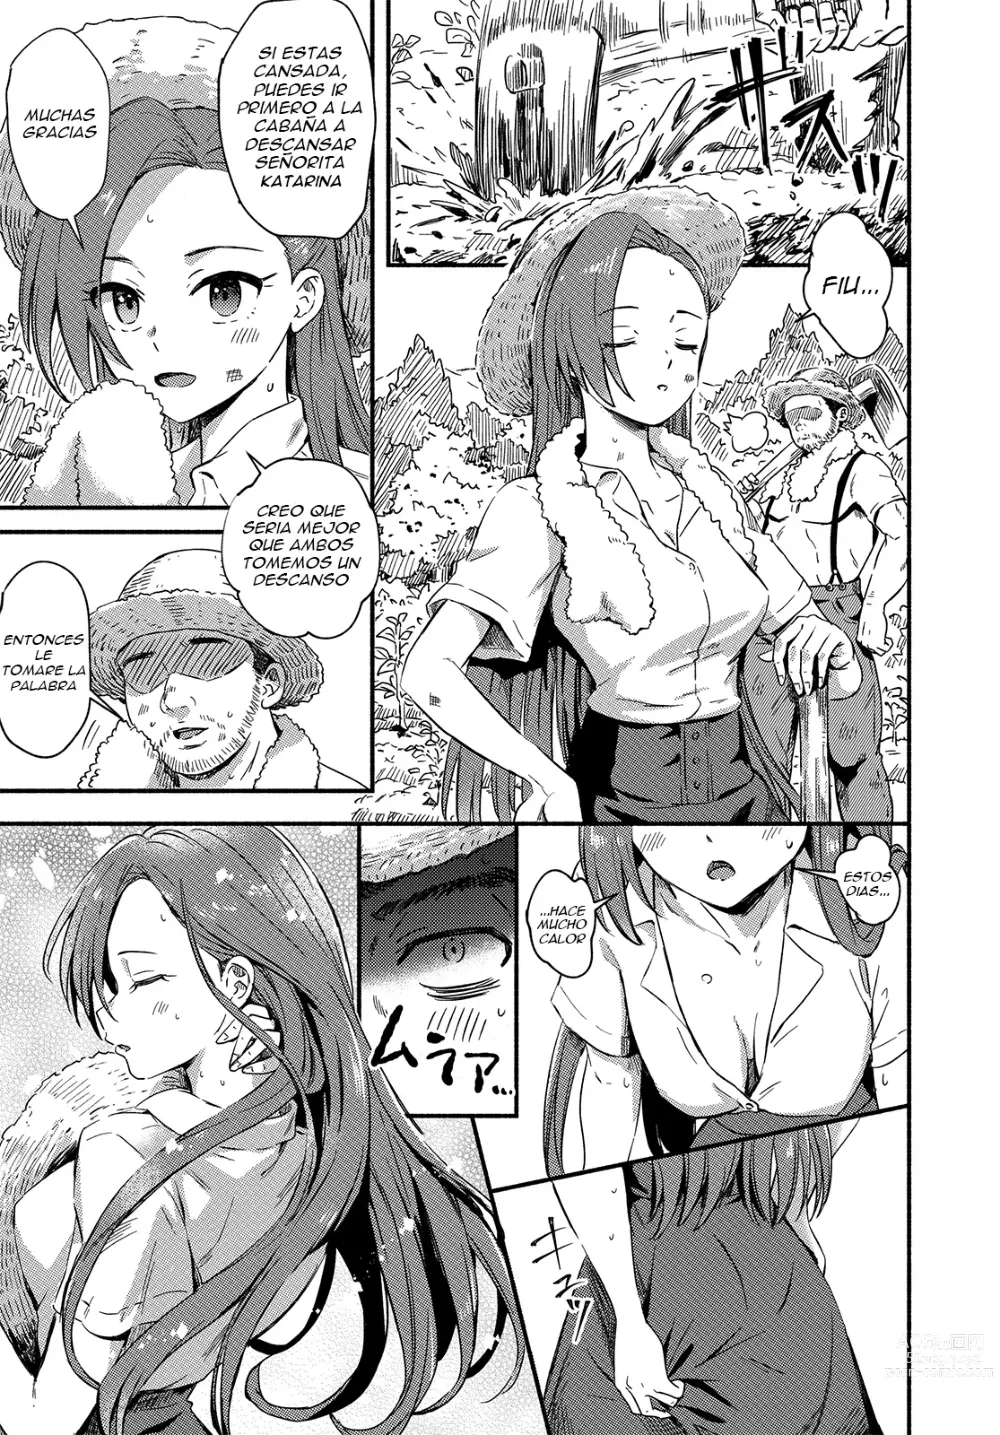 Page 3 of doujinshi Encontre Un Mal Final Oculto en La Villana